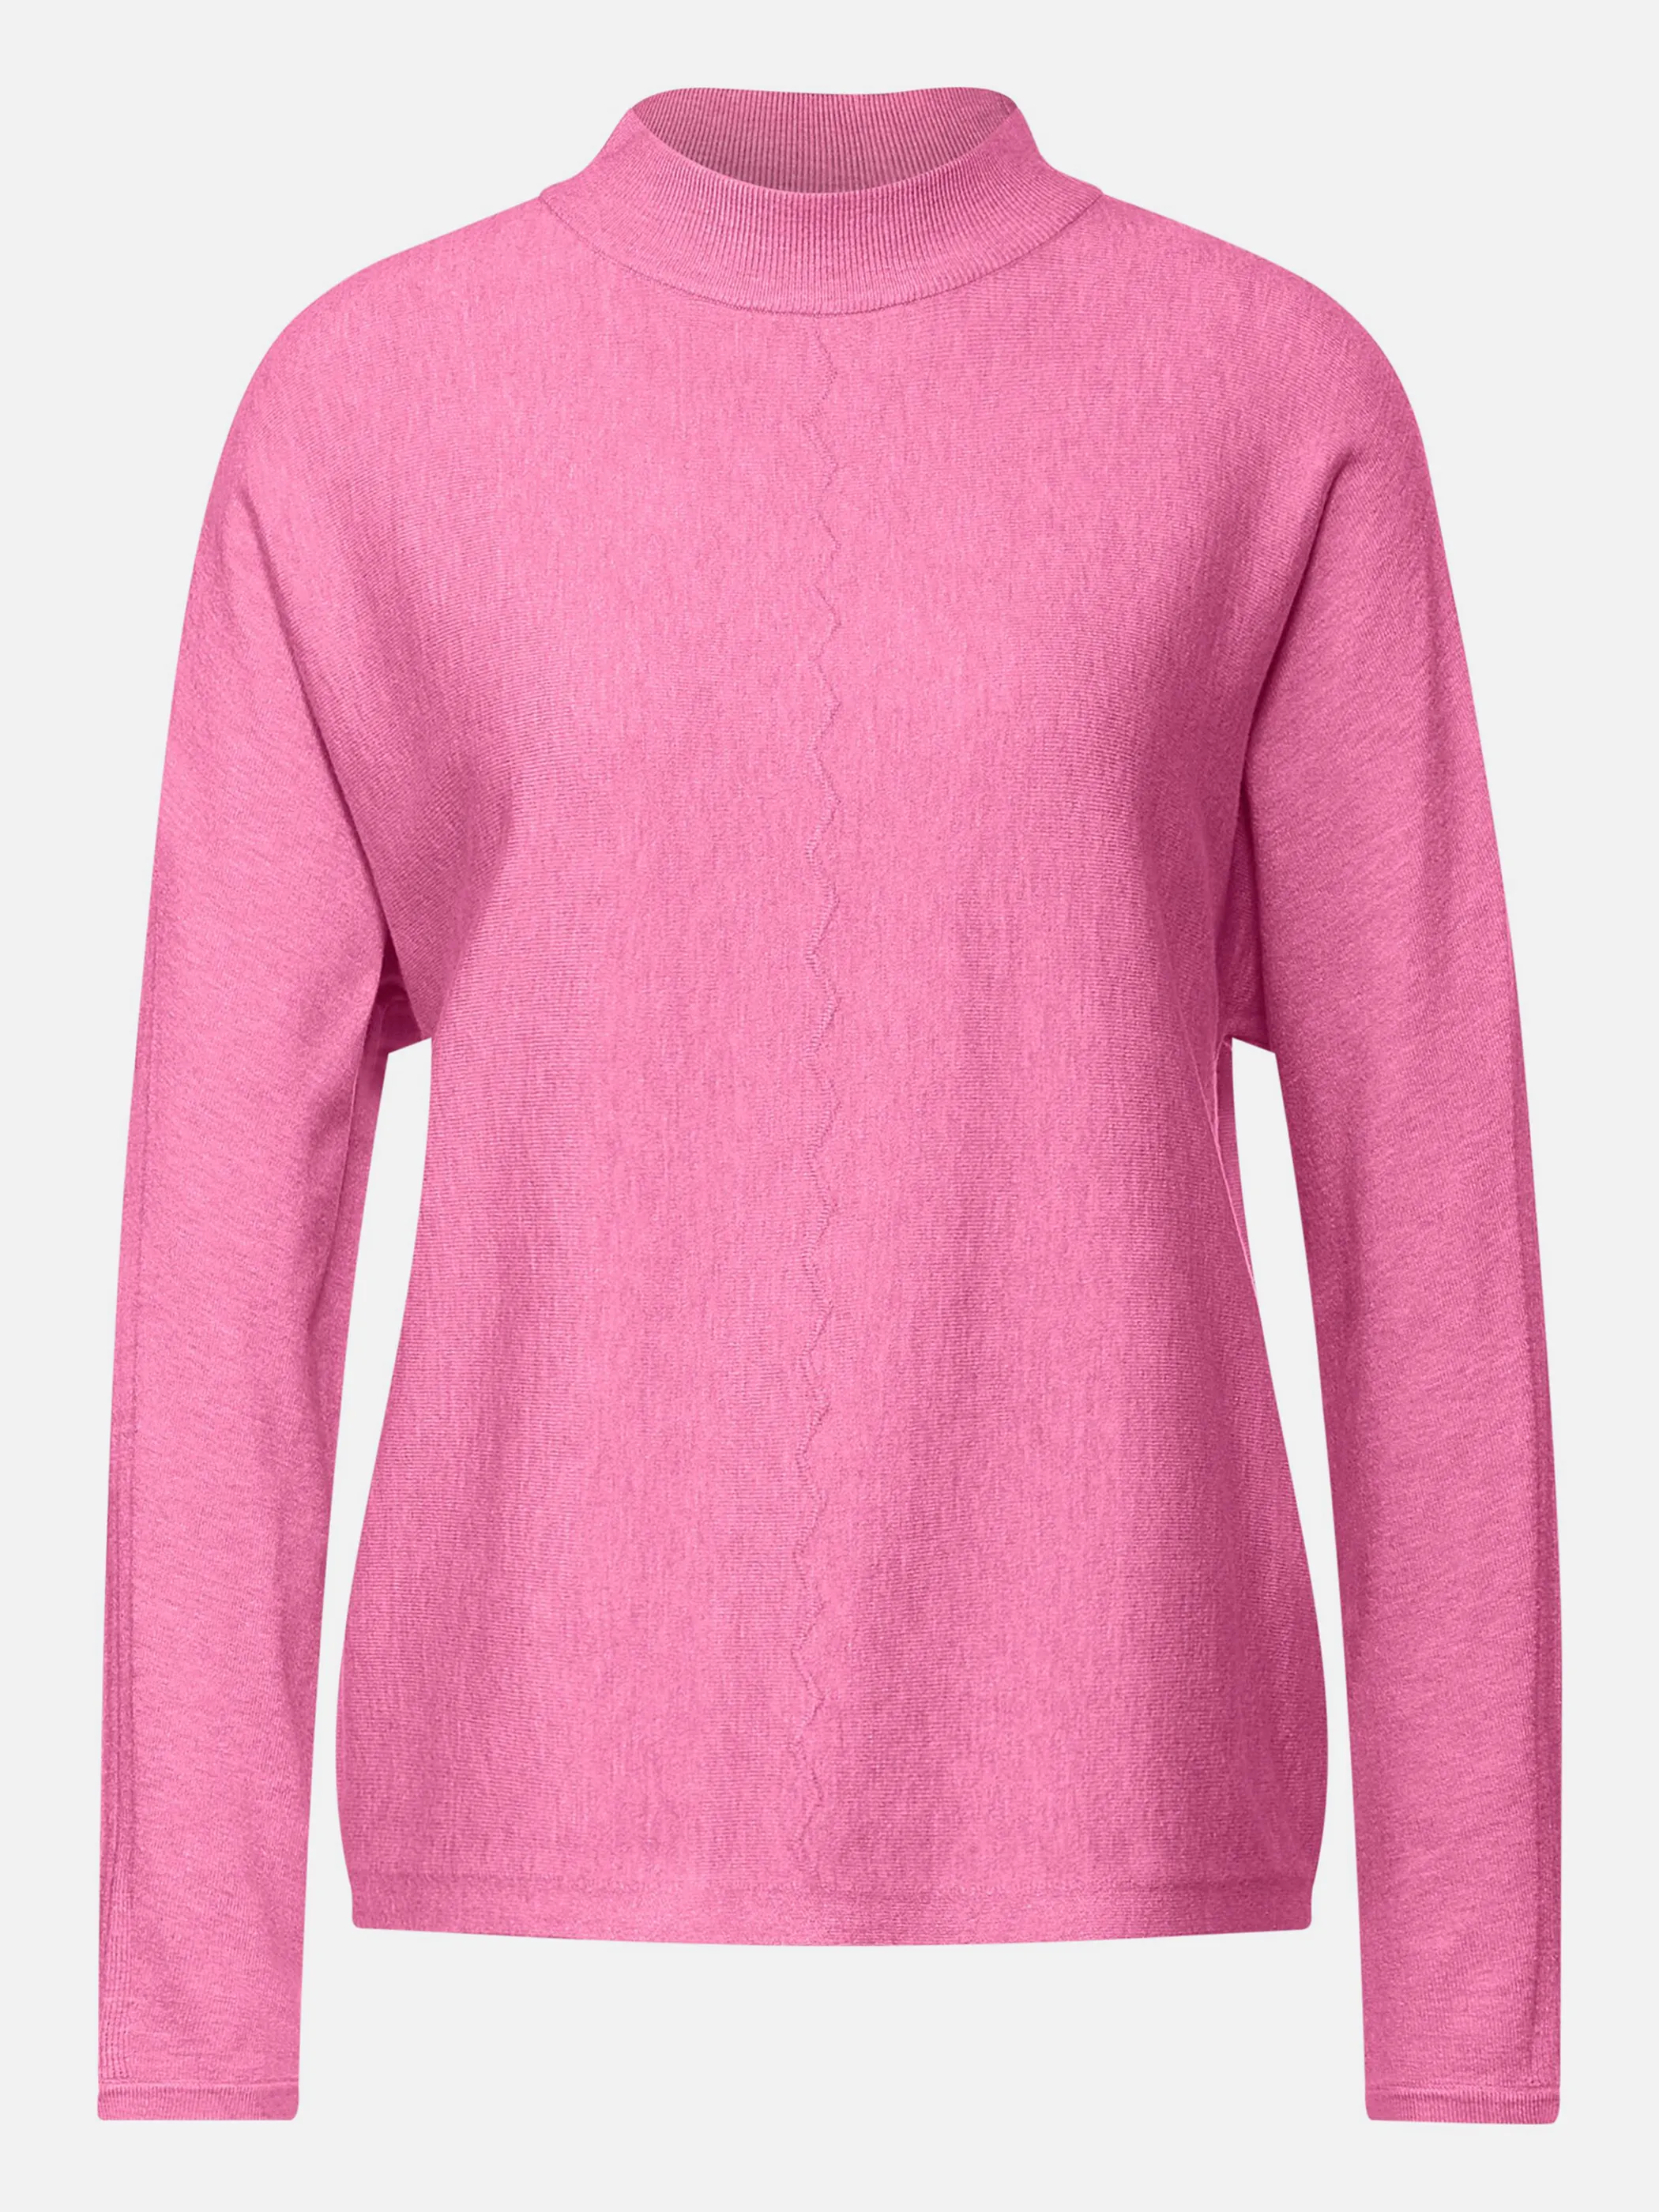 Street One A302109 LTD QR dolman sweater Pink 873650 14249 1